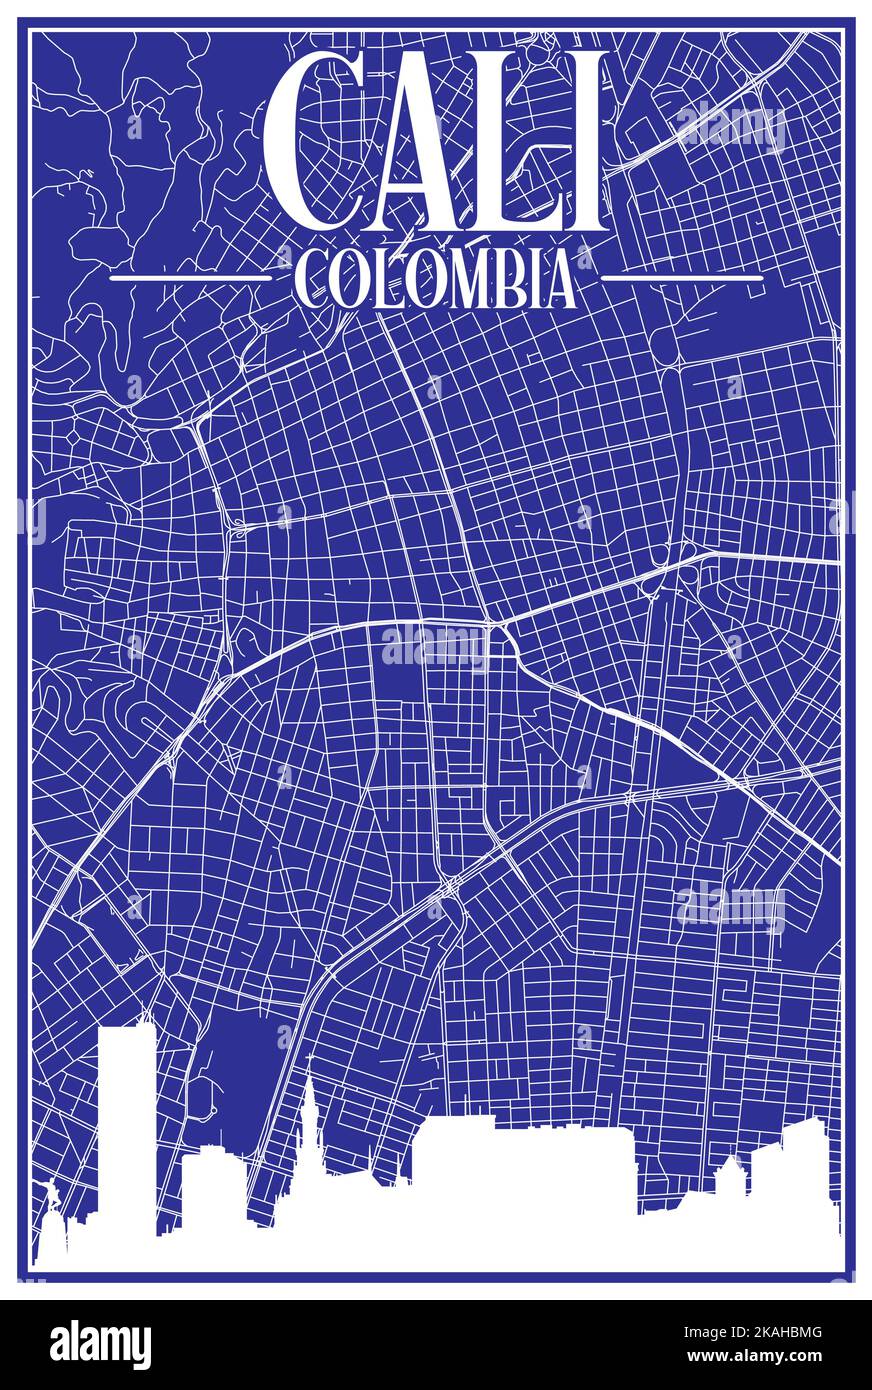 Carte du réseau des rues du centre-ville DE CALI, COLOMBIE, imprimée à la main, d'époque bleue, avec des gratte-ciel et des lettres en relief Illustration de Vecteur